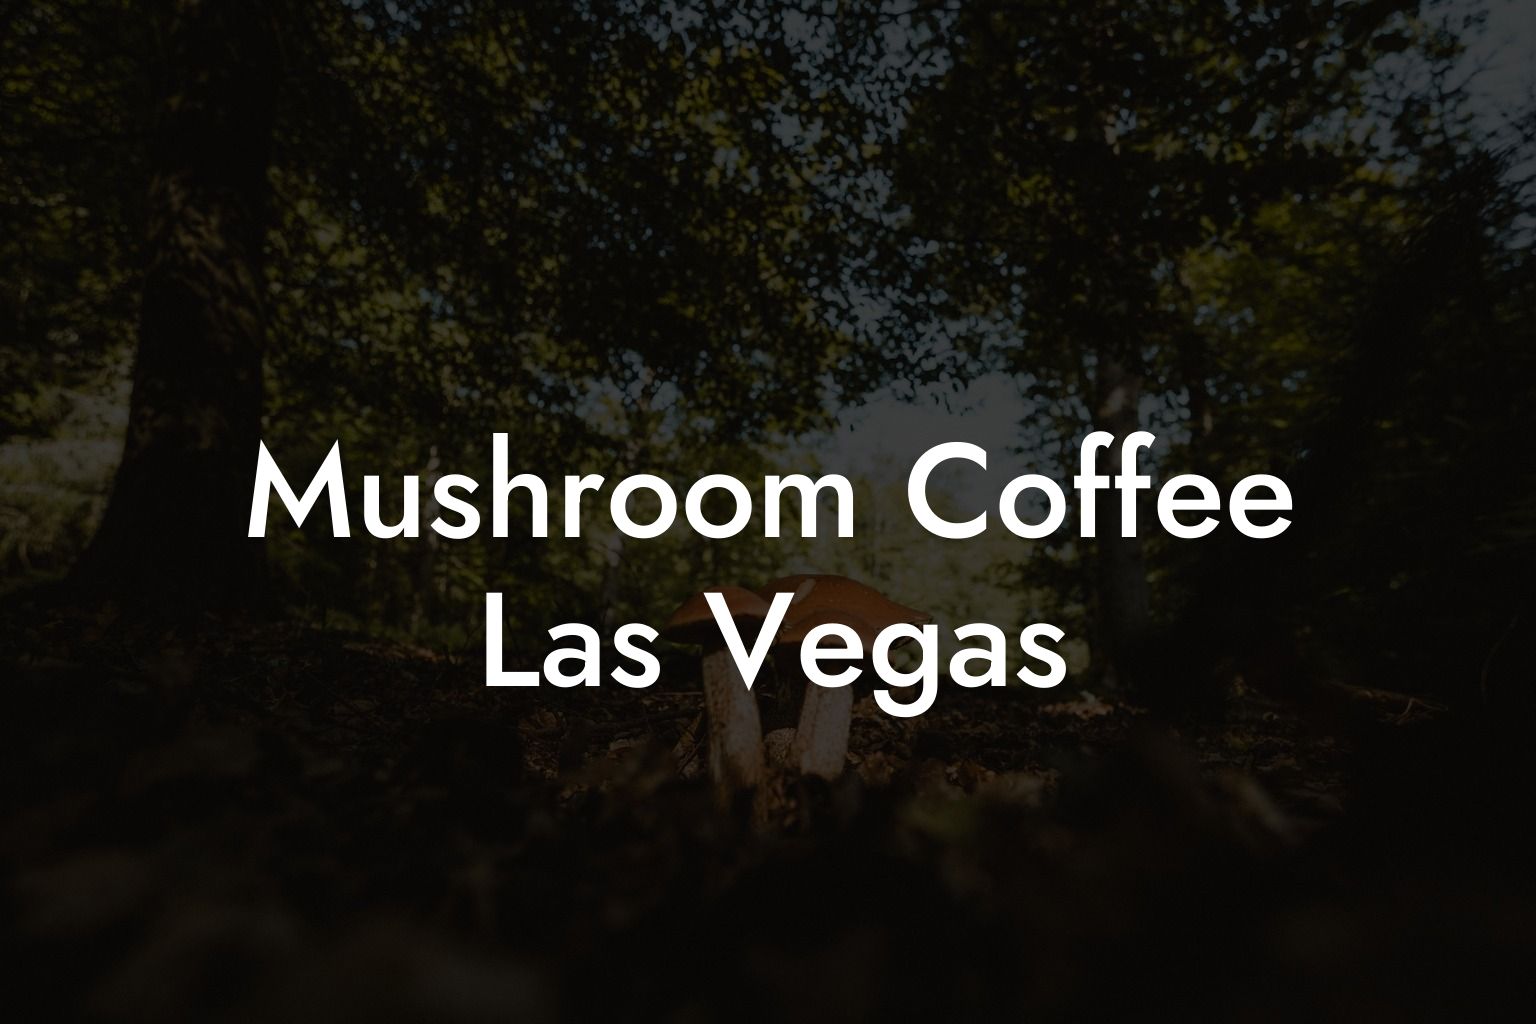 Mushroom Coffee Las Vegas